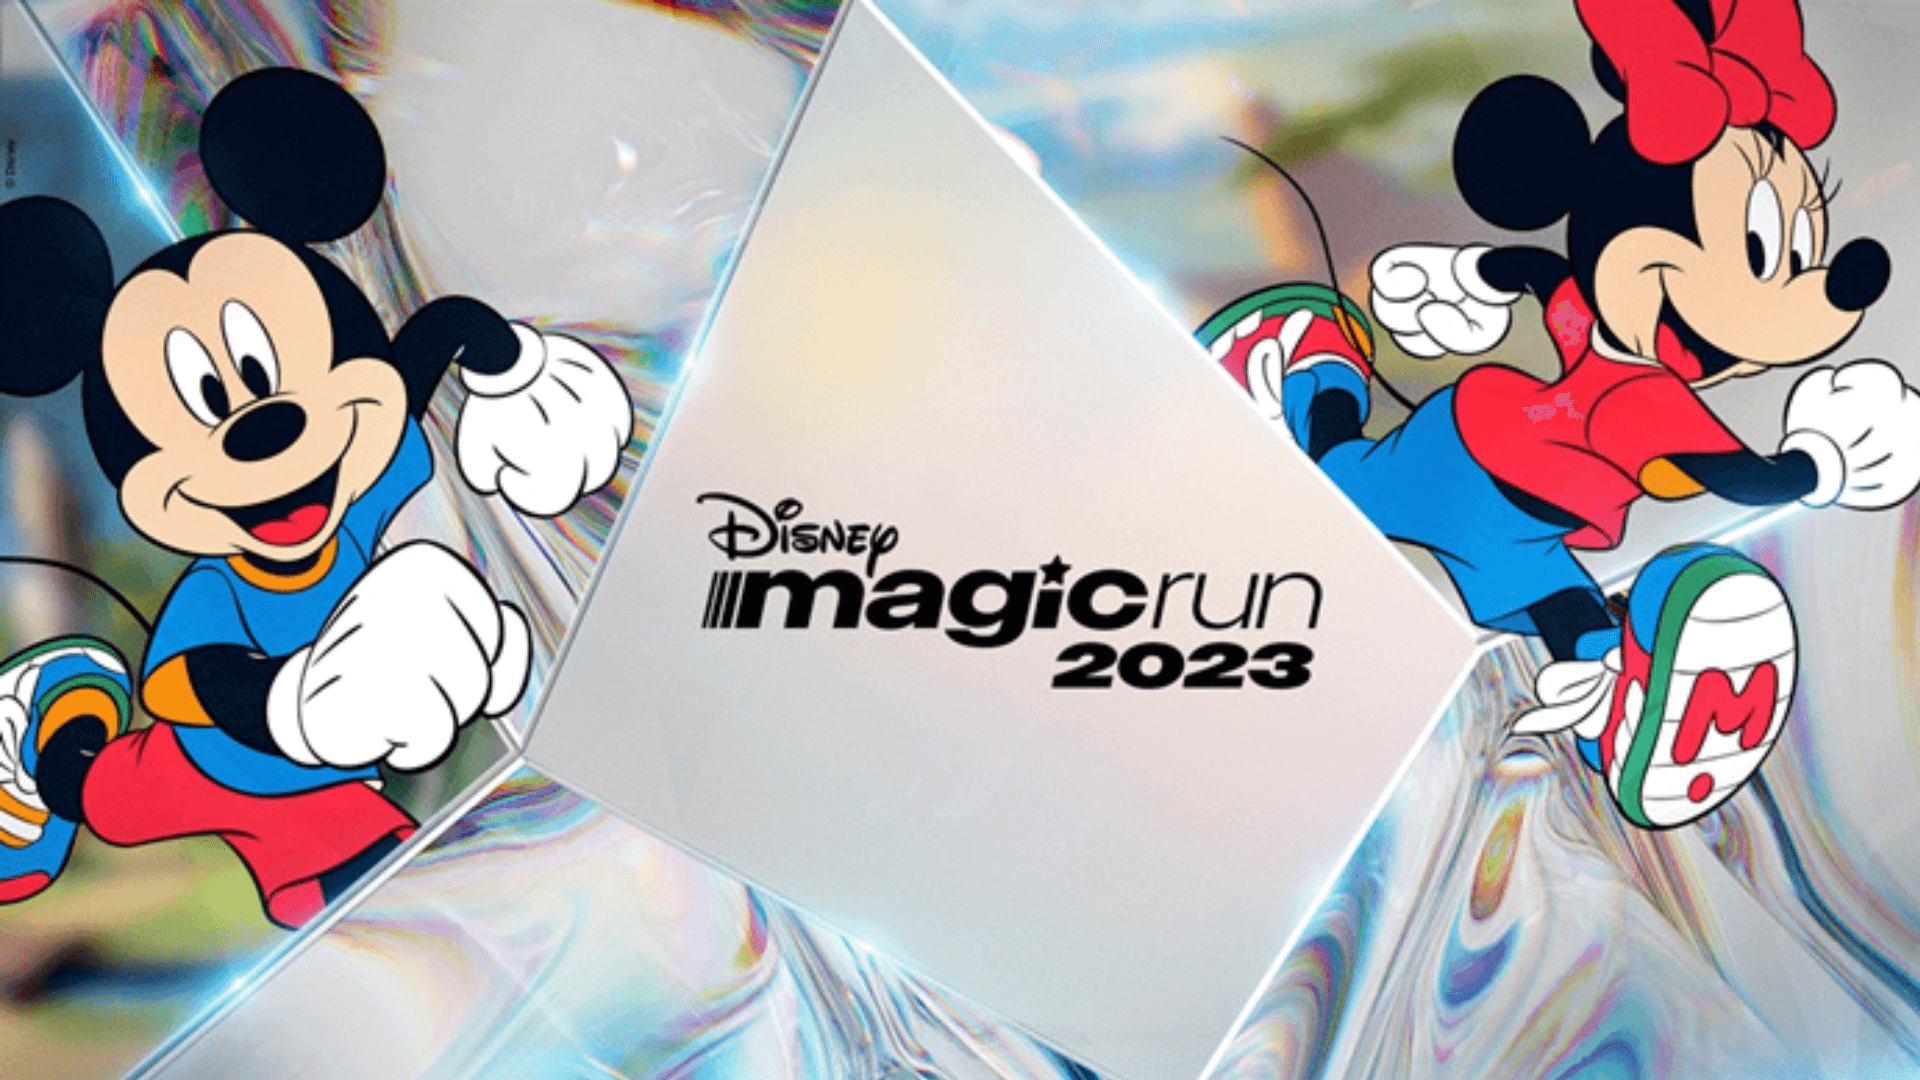 Pouco mais de 24h após abertura, Disney Magic Run 2023 encerra inscrições